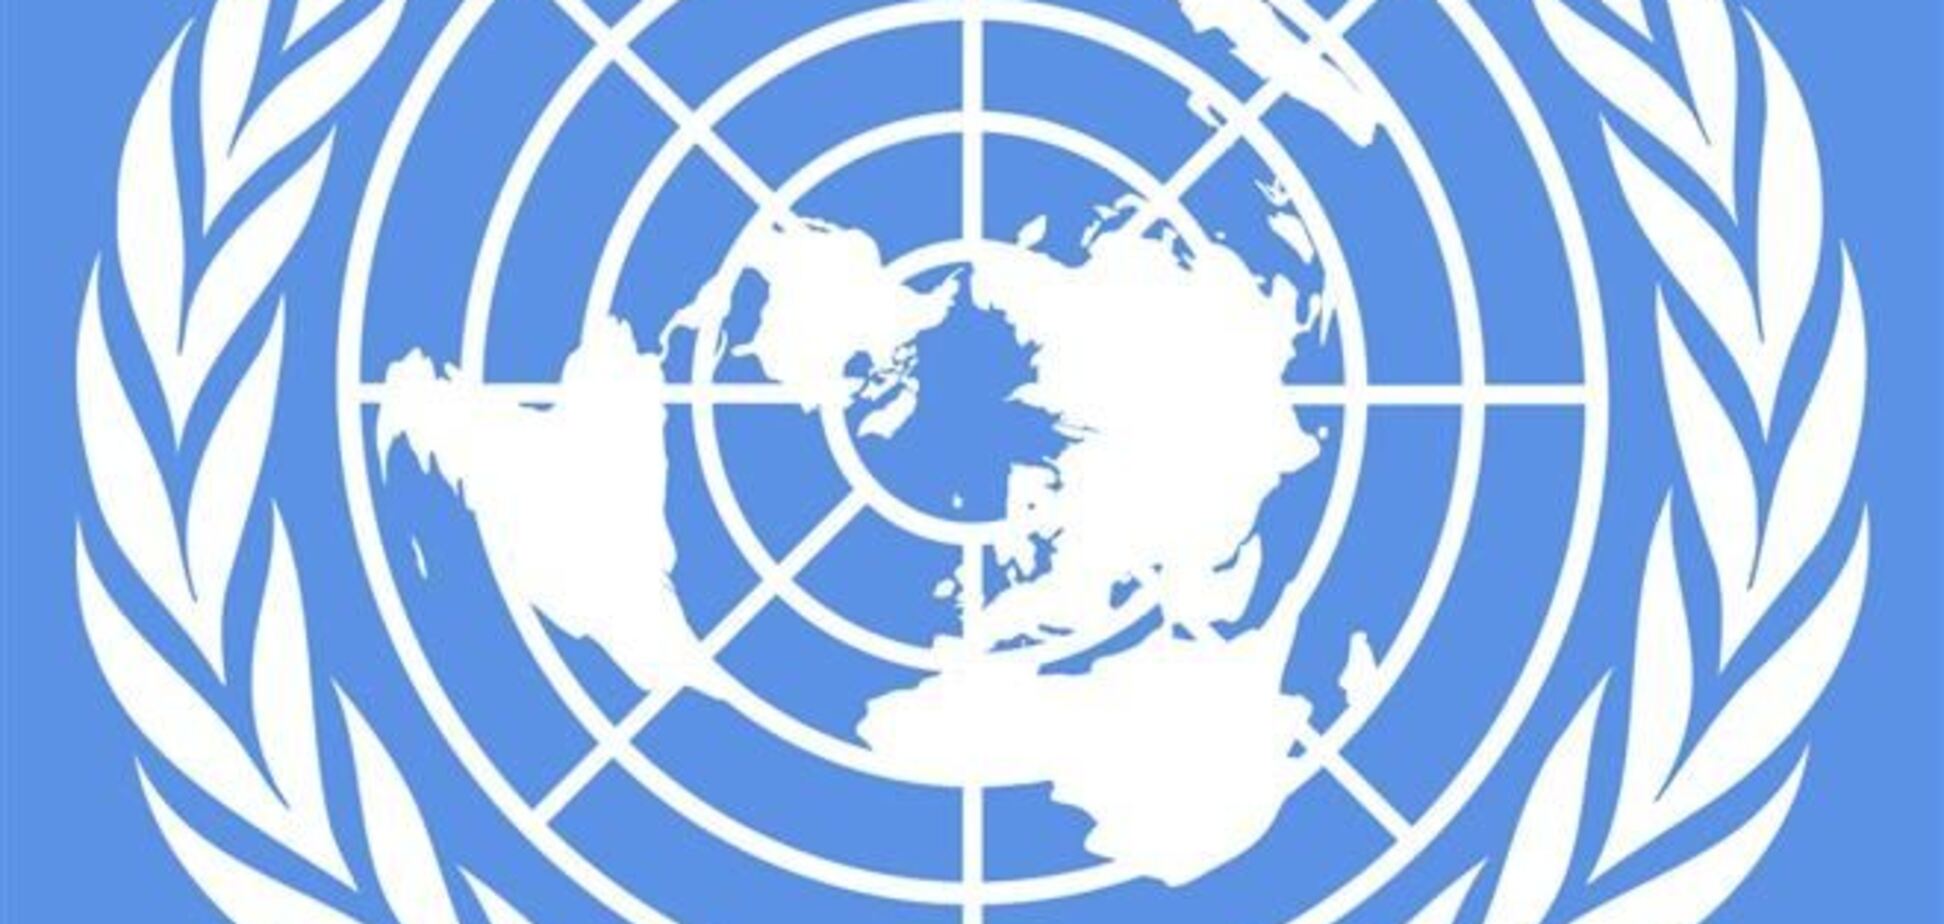 ООН починає відстежувати ситуацію з правами людини по всій території України 